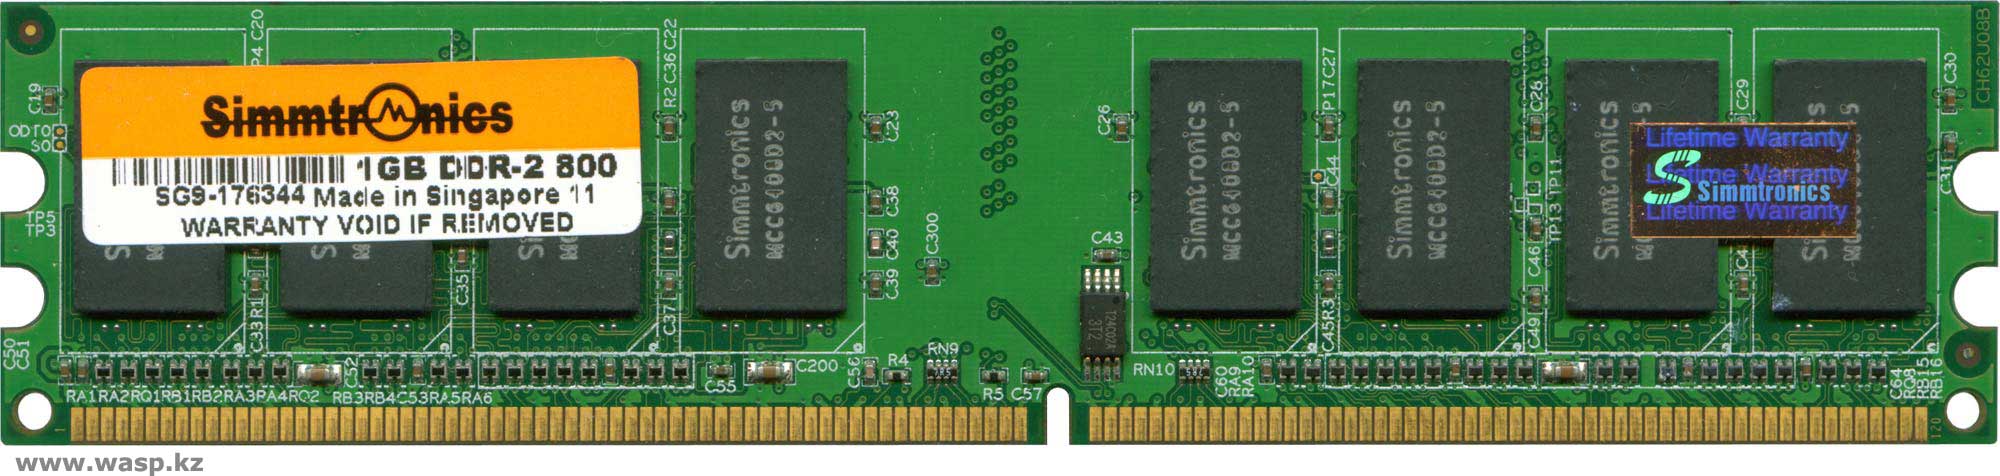 Simmtronics 1GB DDR-2 800 ОЗУ